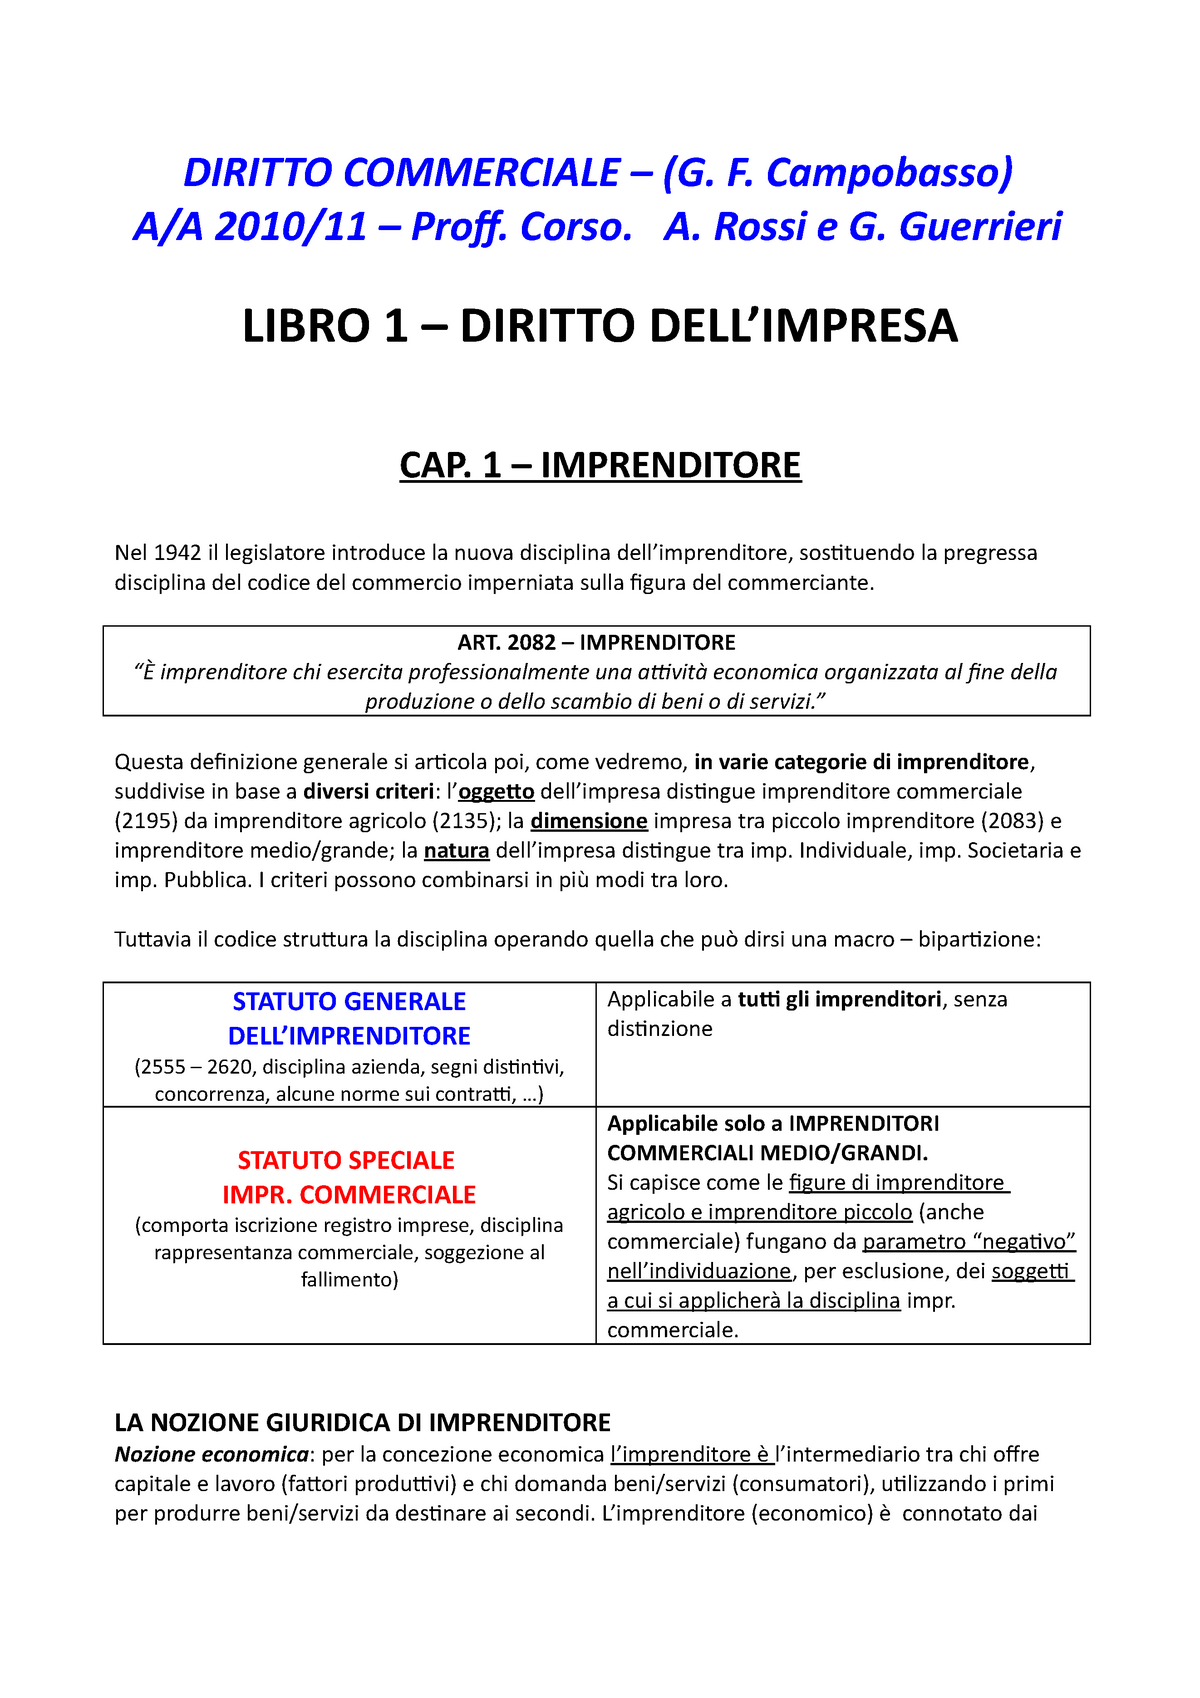 Riassunto DEL Manuale DI Diritto Commerciale PDF - sesta edizione campobasso  - - Studocu